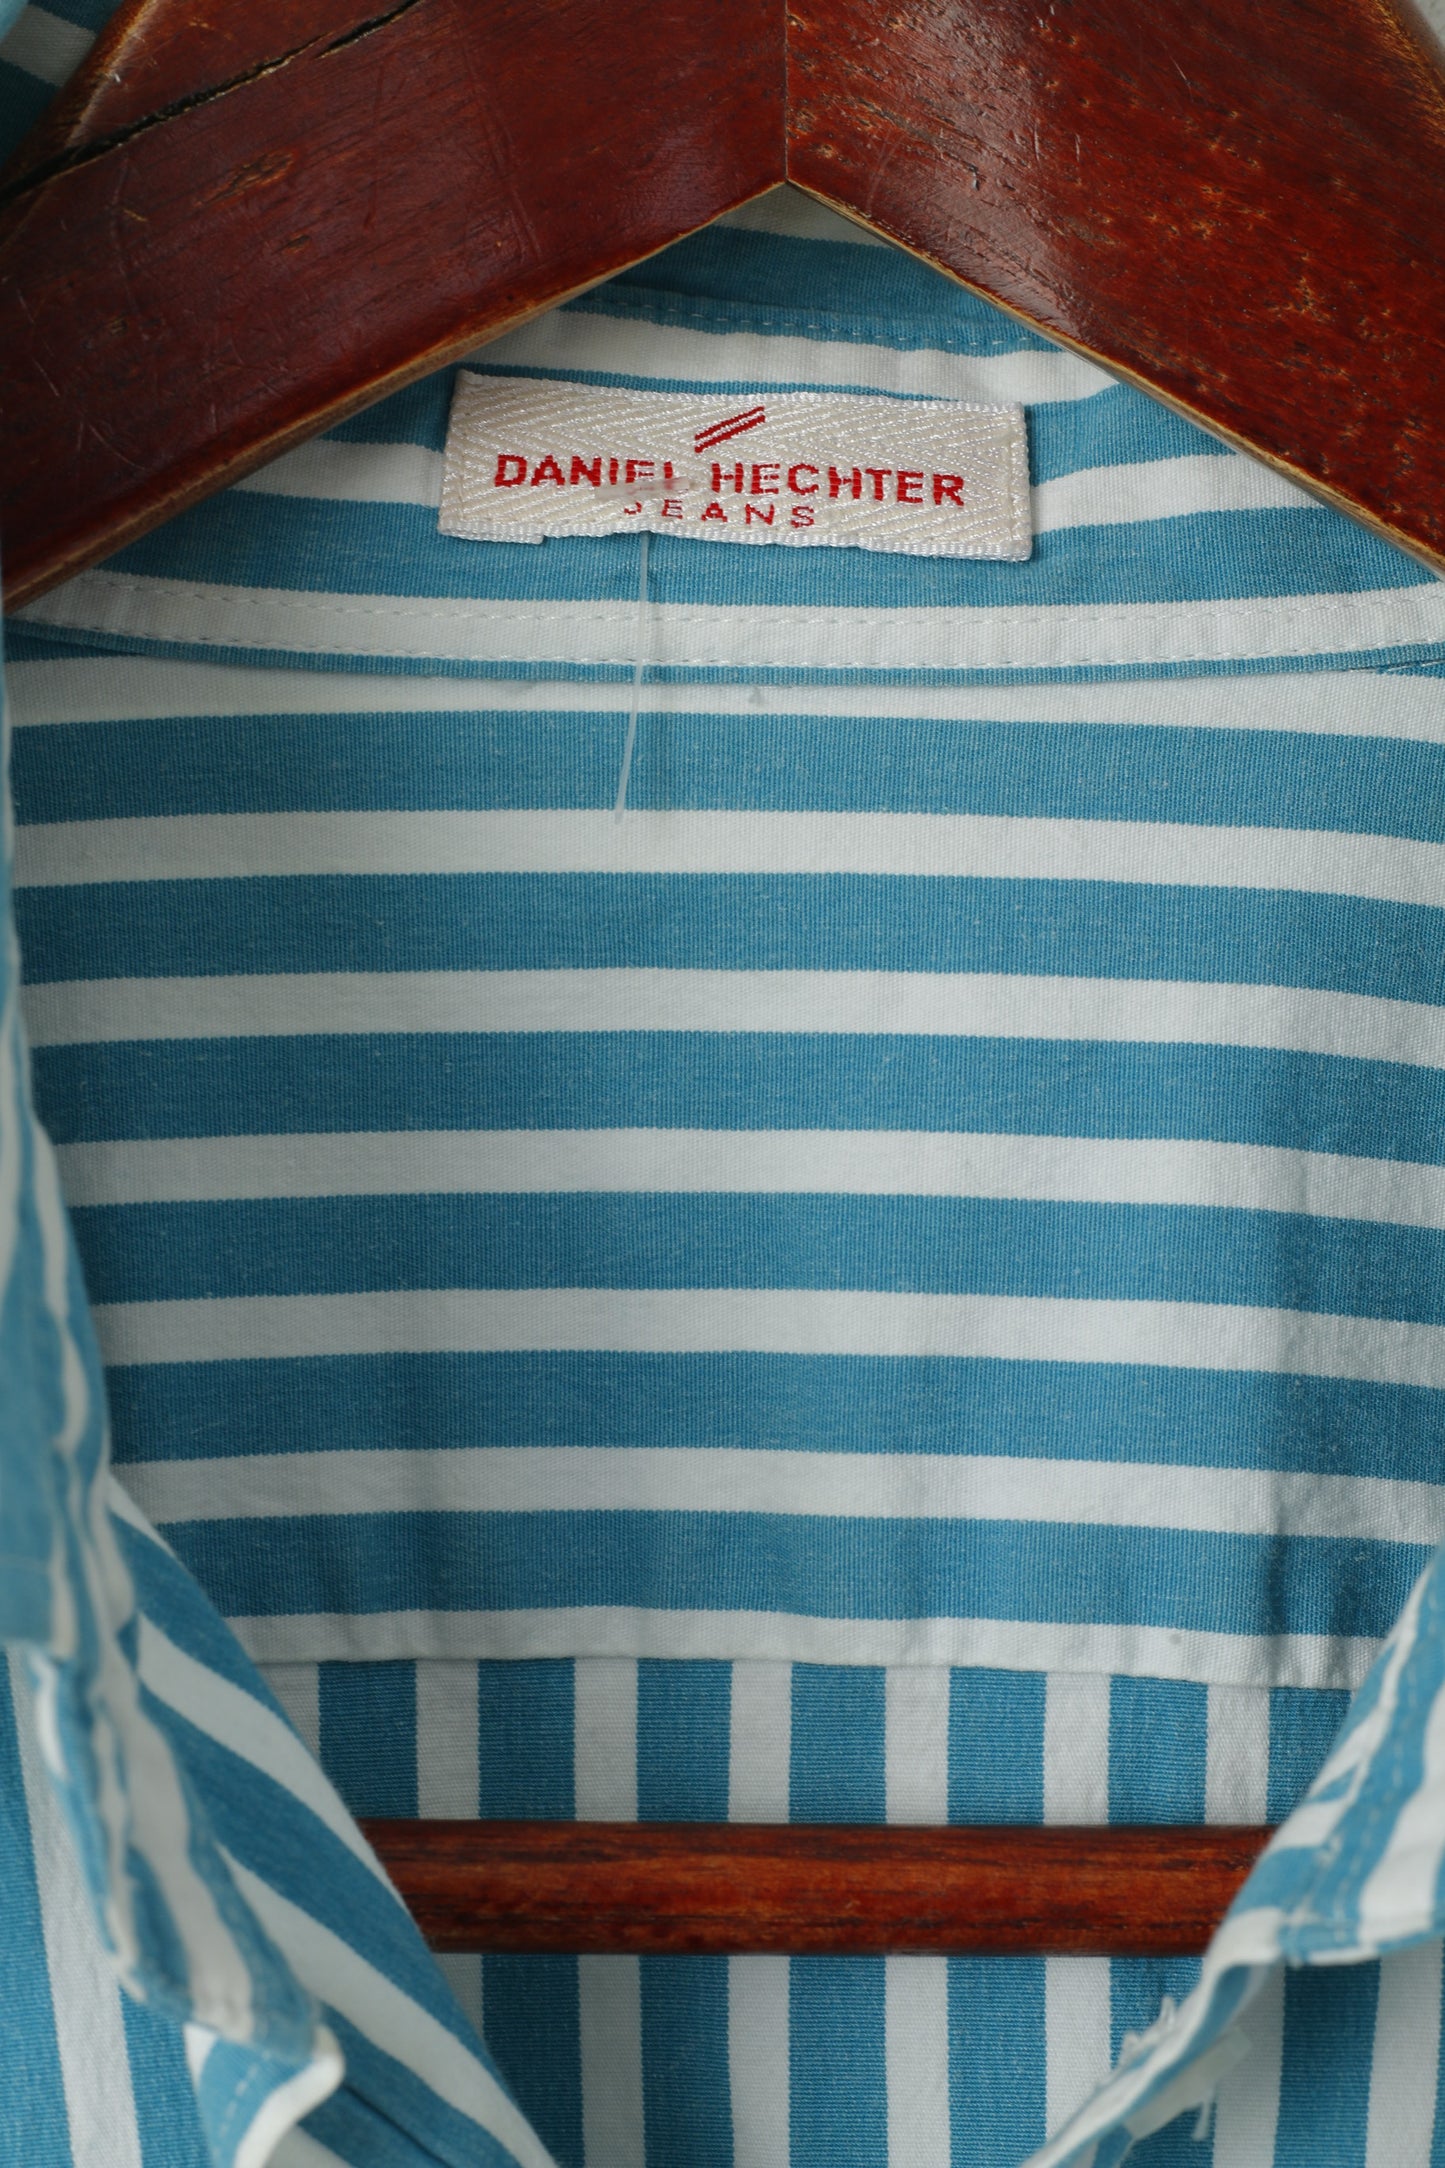 Daniel Hechter Jeans Donna 16 M Camicia casual Top in cotone a maniche lunghe a righe turchesi